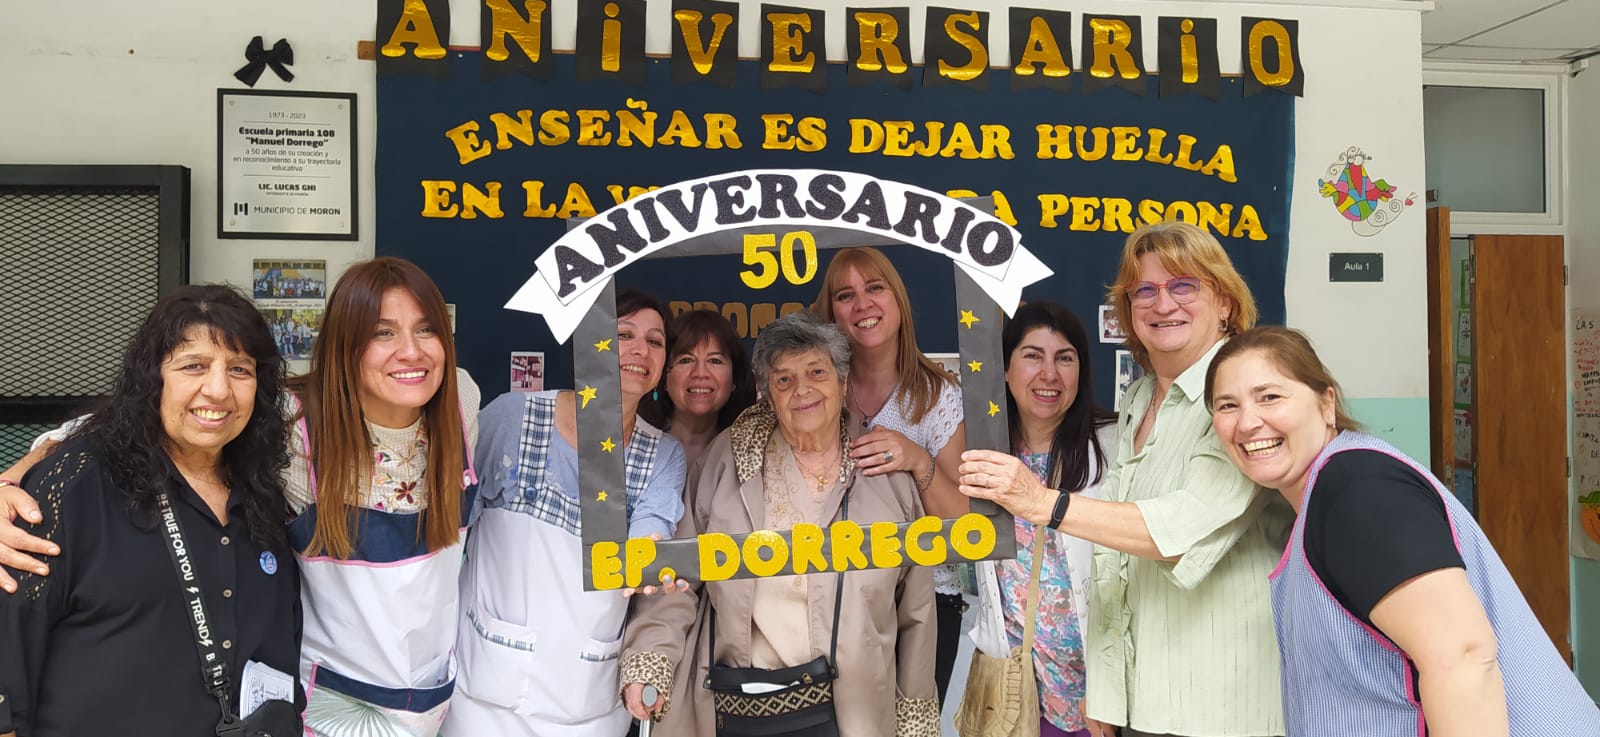 Histórico: La escuela primaria del Manuel Dorrego de Morón celebró sus 50 años